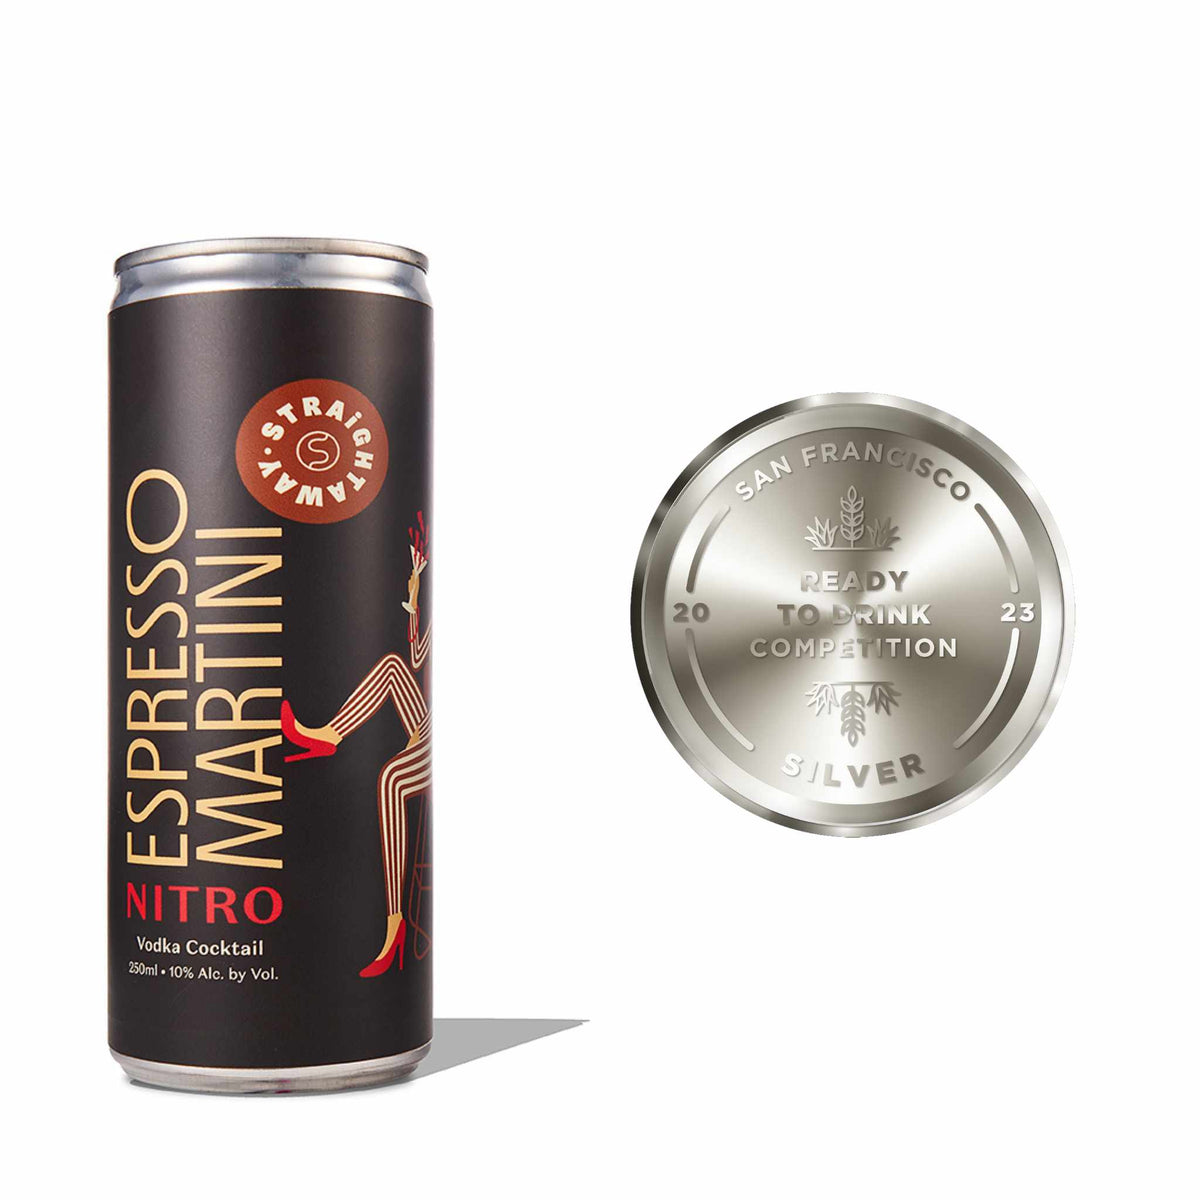 Nitro Espresso Martini